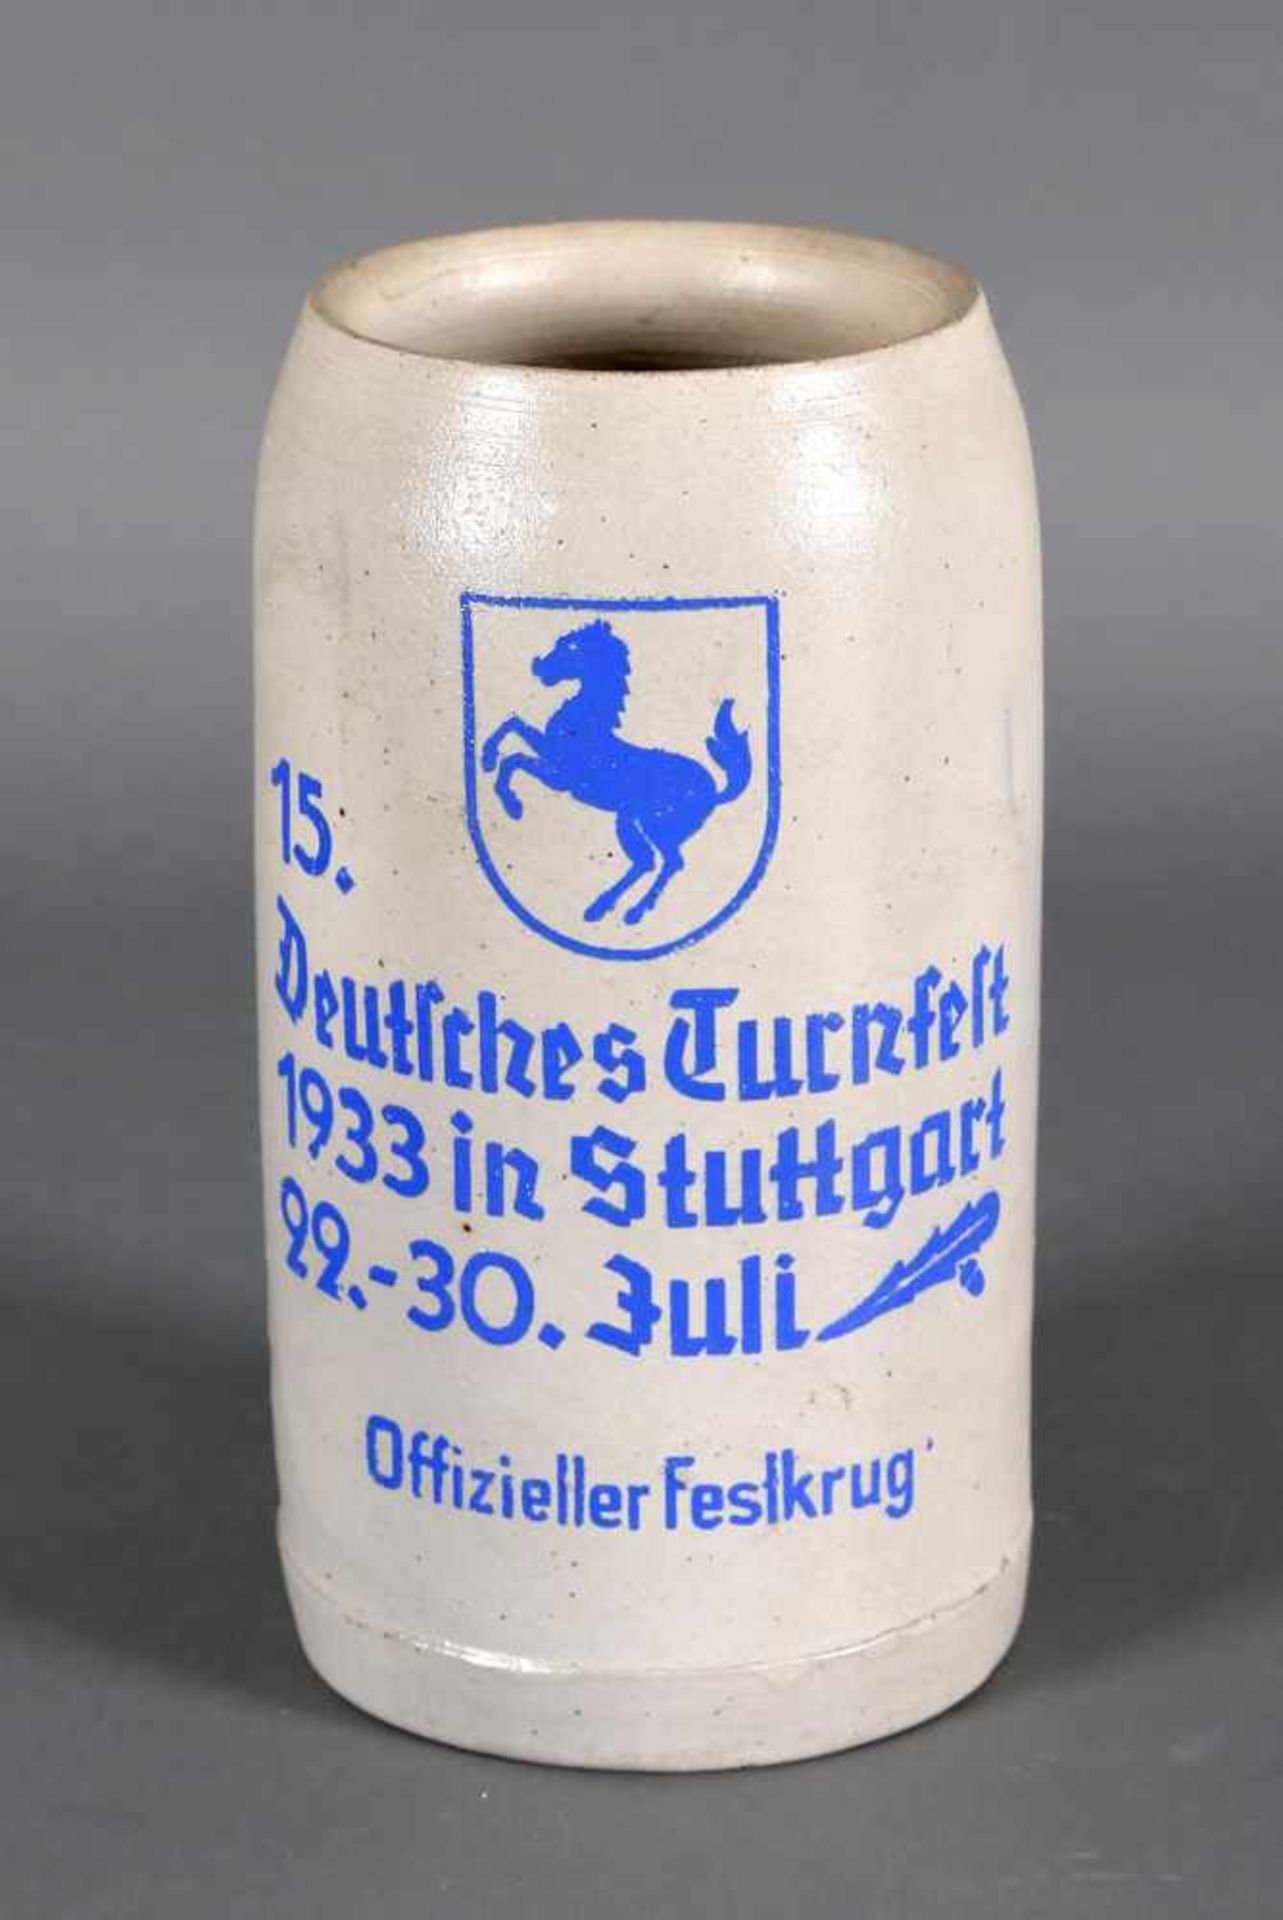 Bierkrug Turnfest 1933 in Stuttgartgemäß Aufschrift offizieller Festkrug anlässlich des 15.